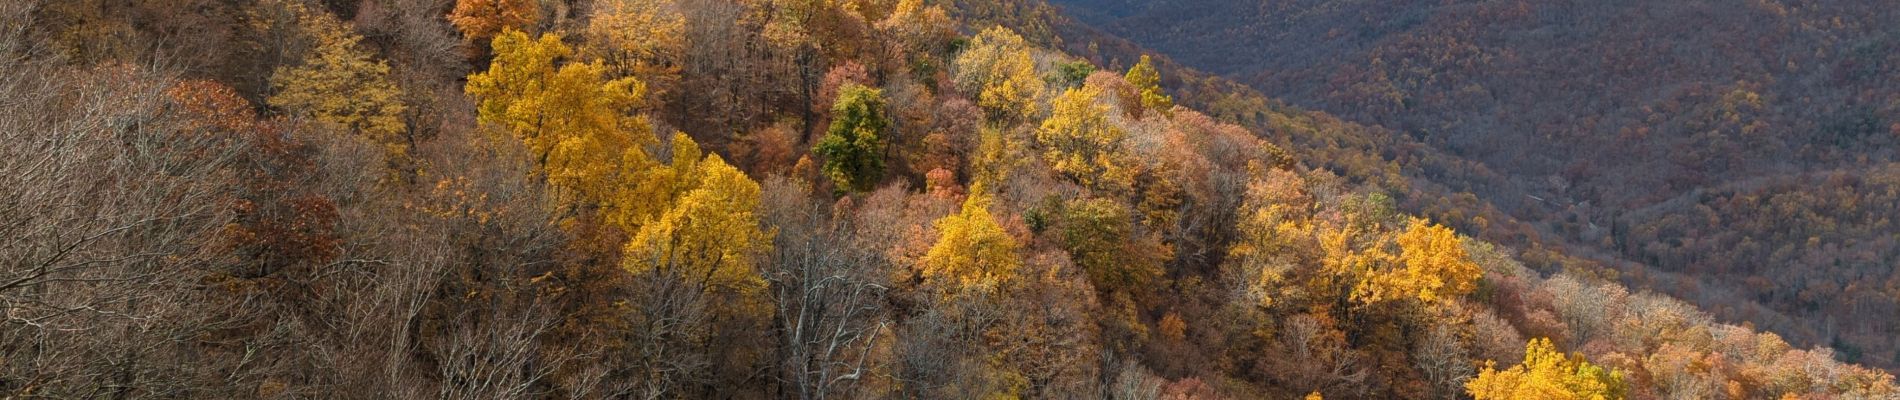 Randonnée Marche Unknown - Crabtree falls Virginia - Photo